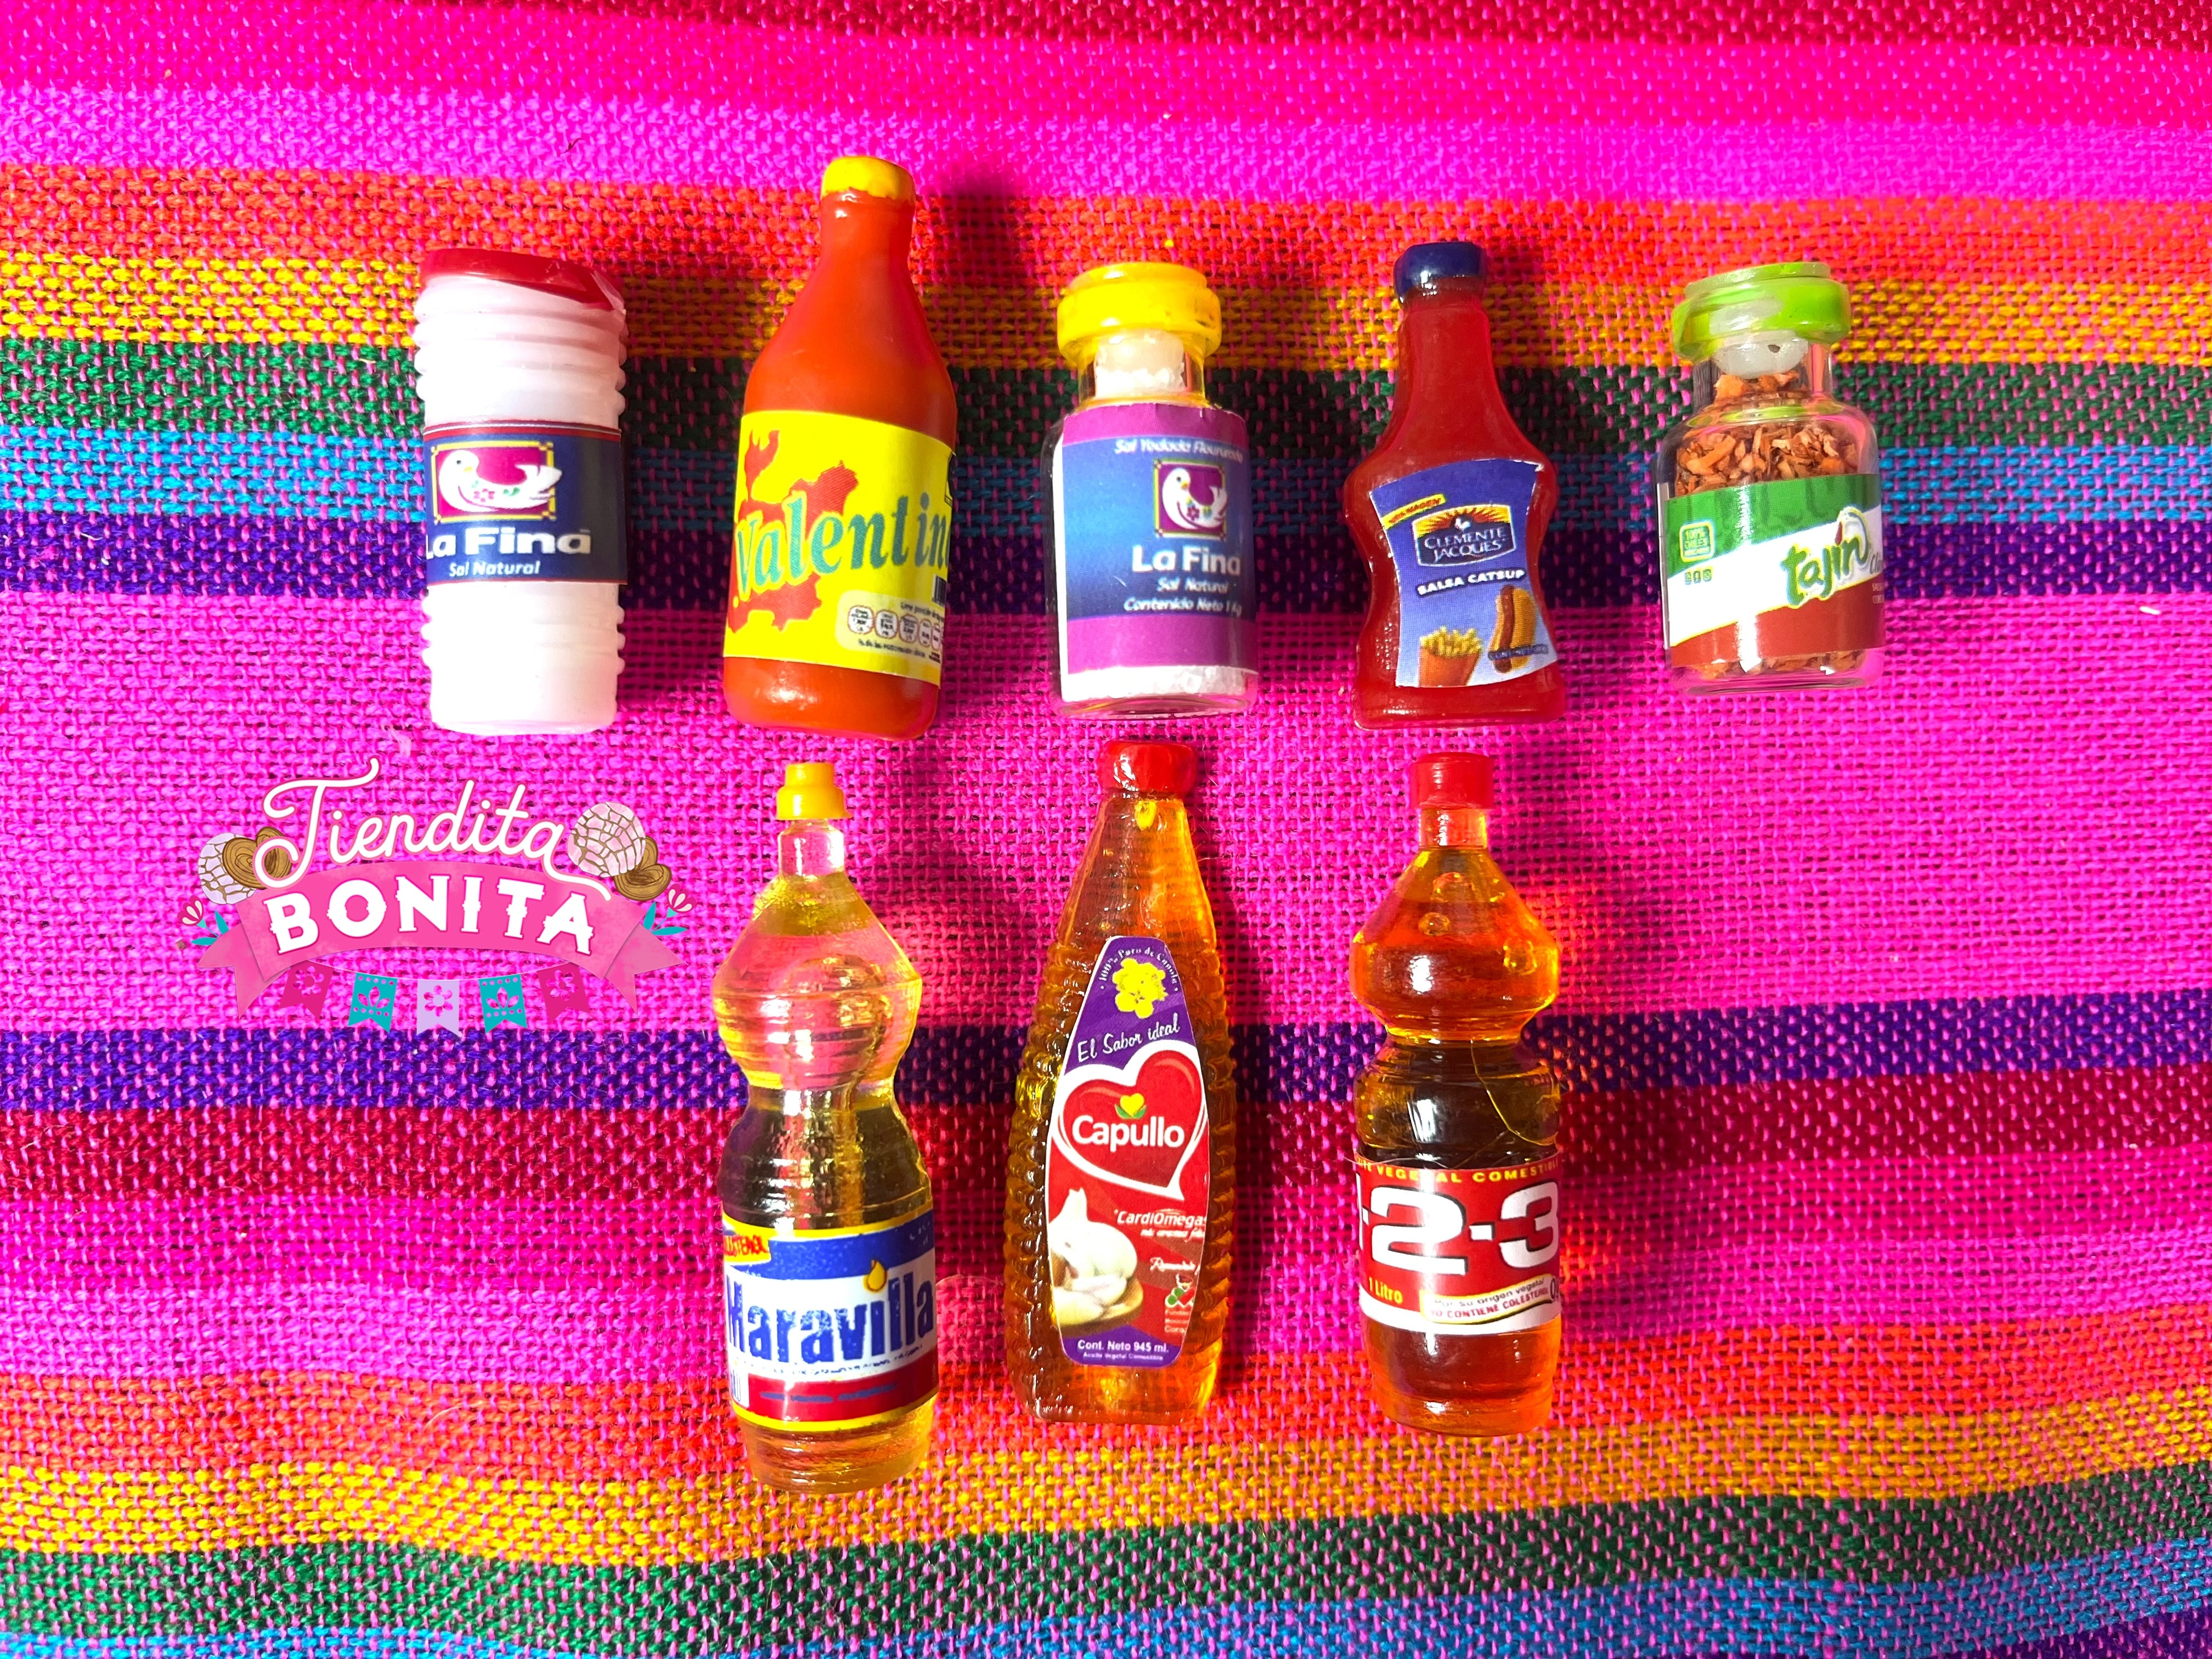 Mexican mini brands